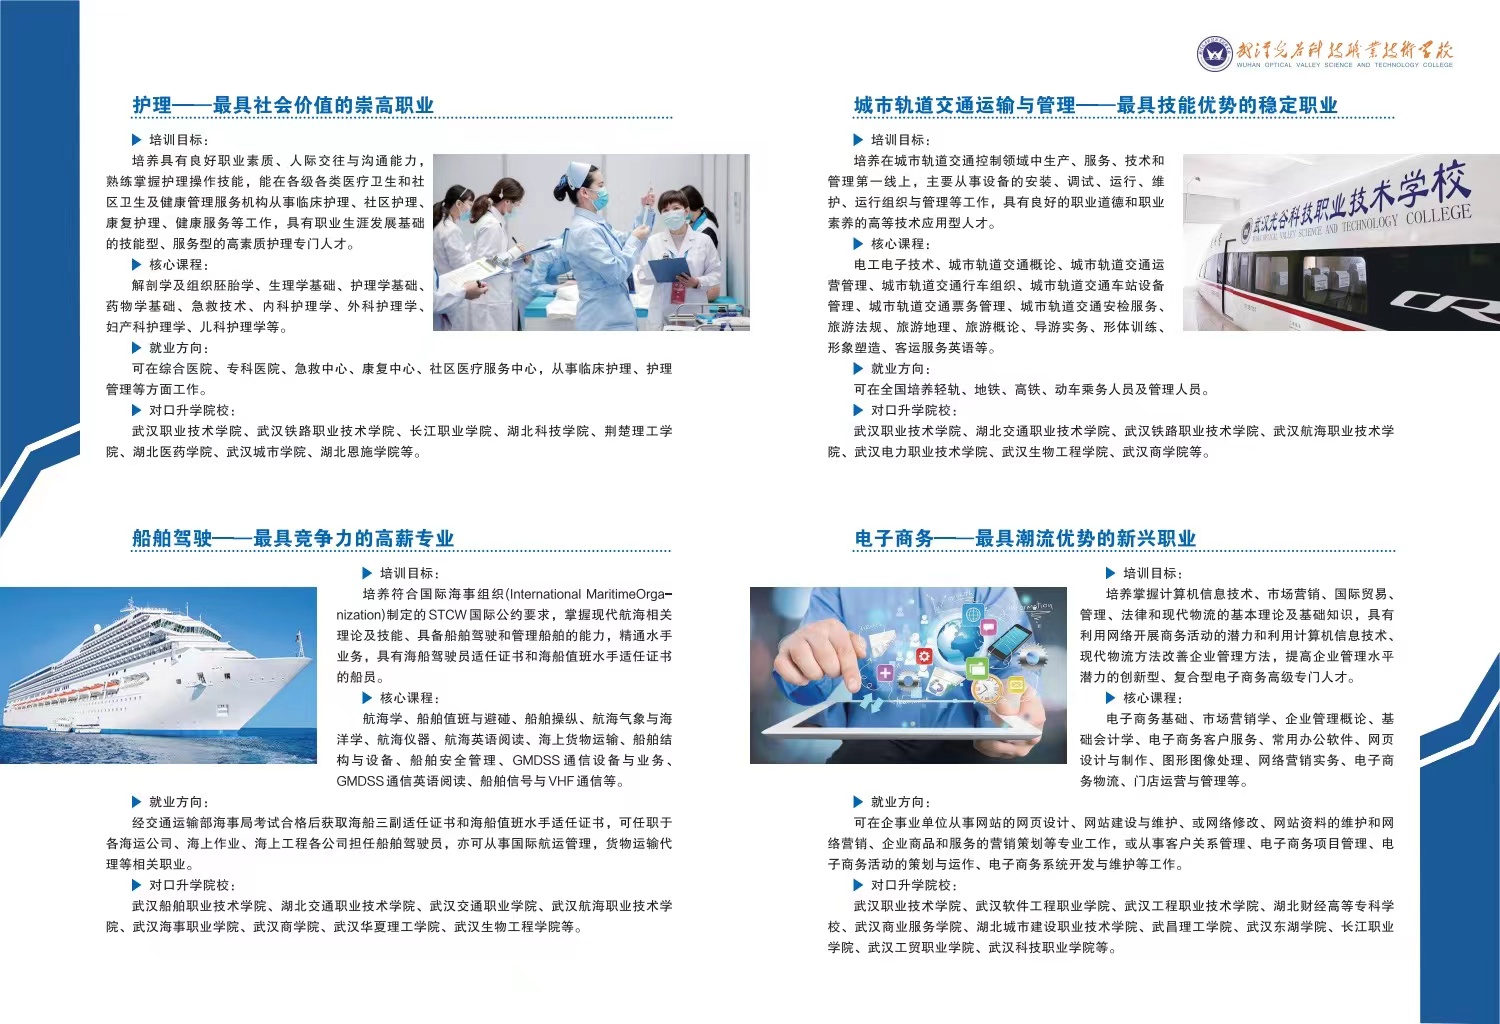 2022年武汉光谷科技职业技术学校招生简章